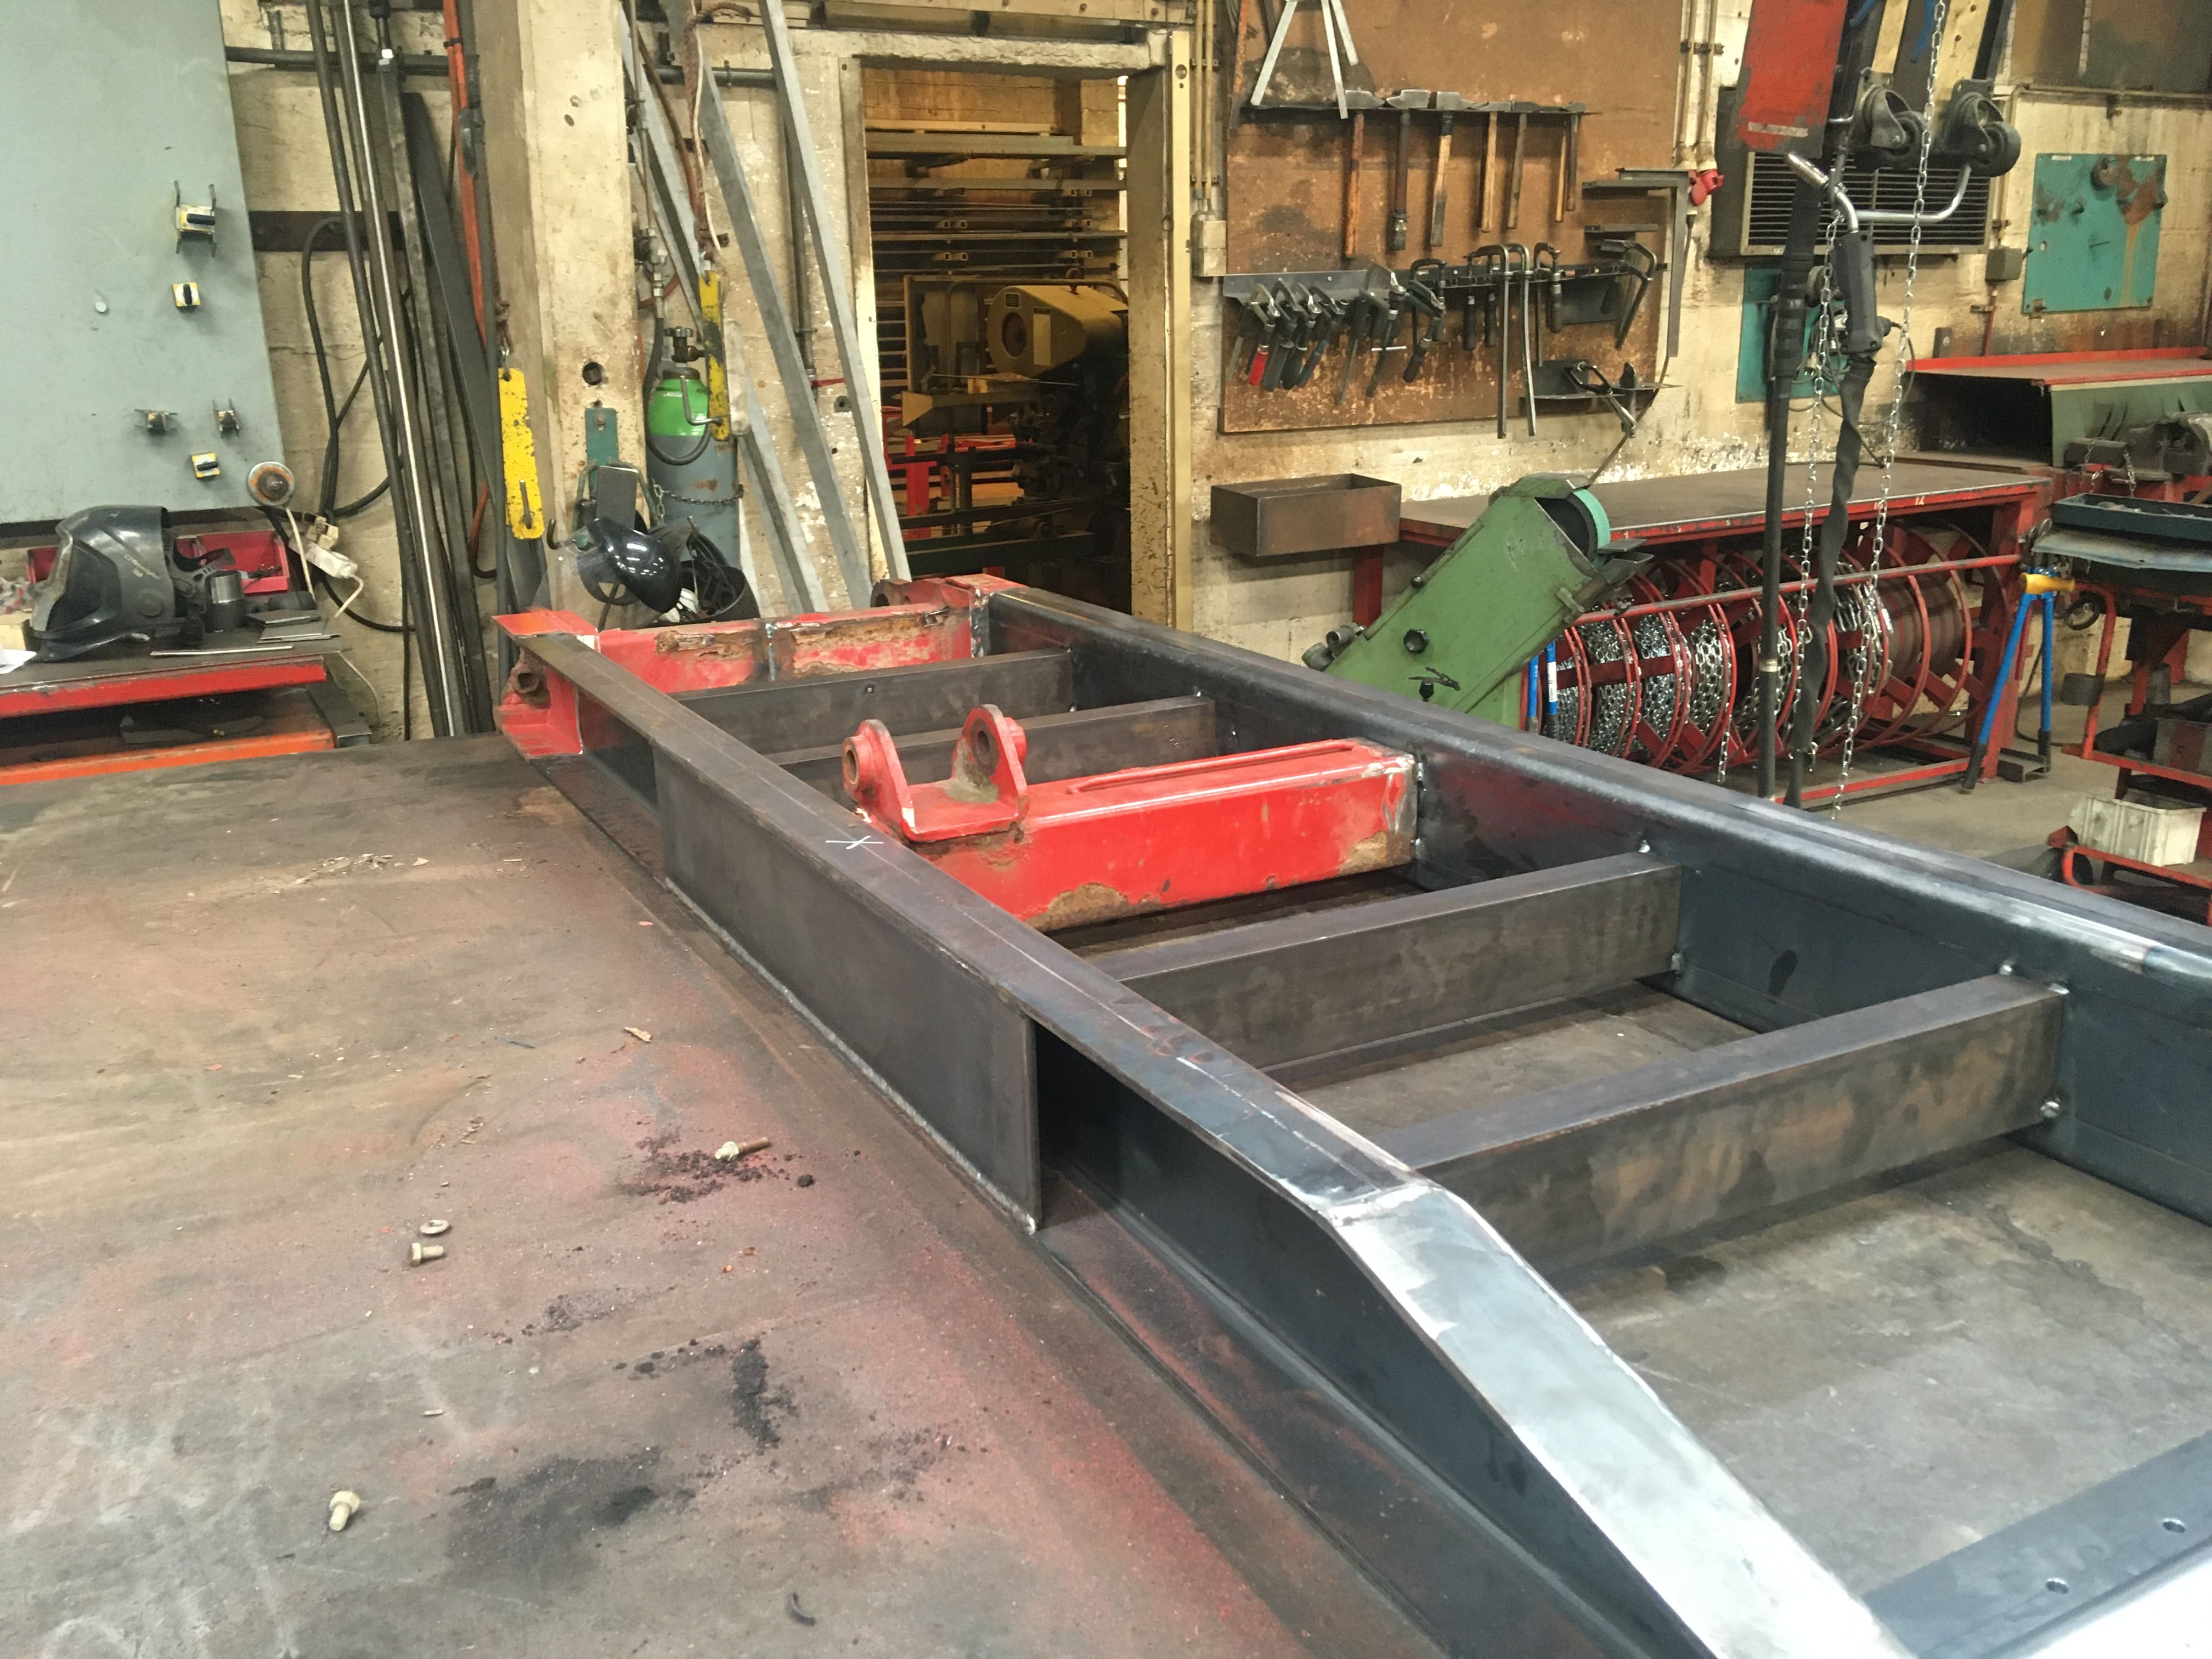 Trailer ramp under maintenance in workshop